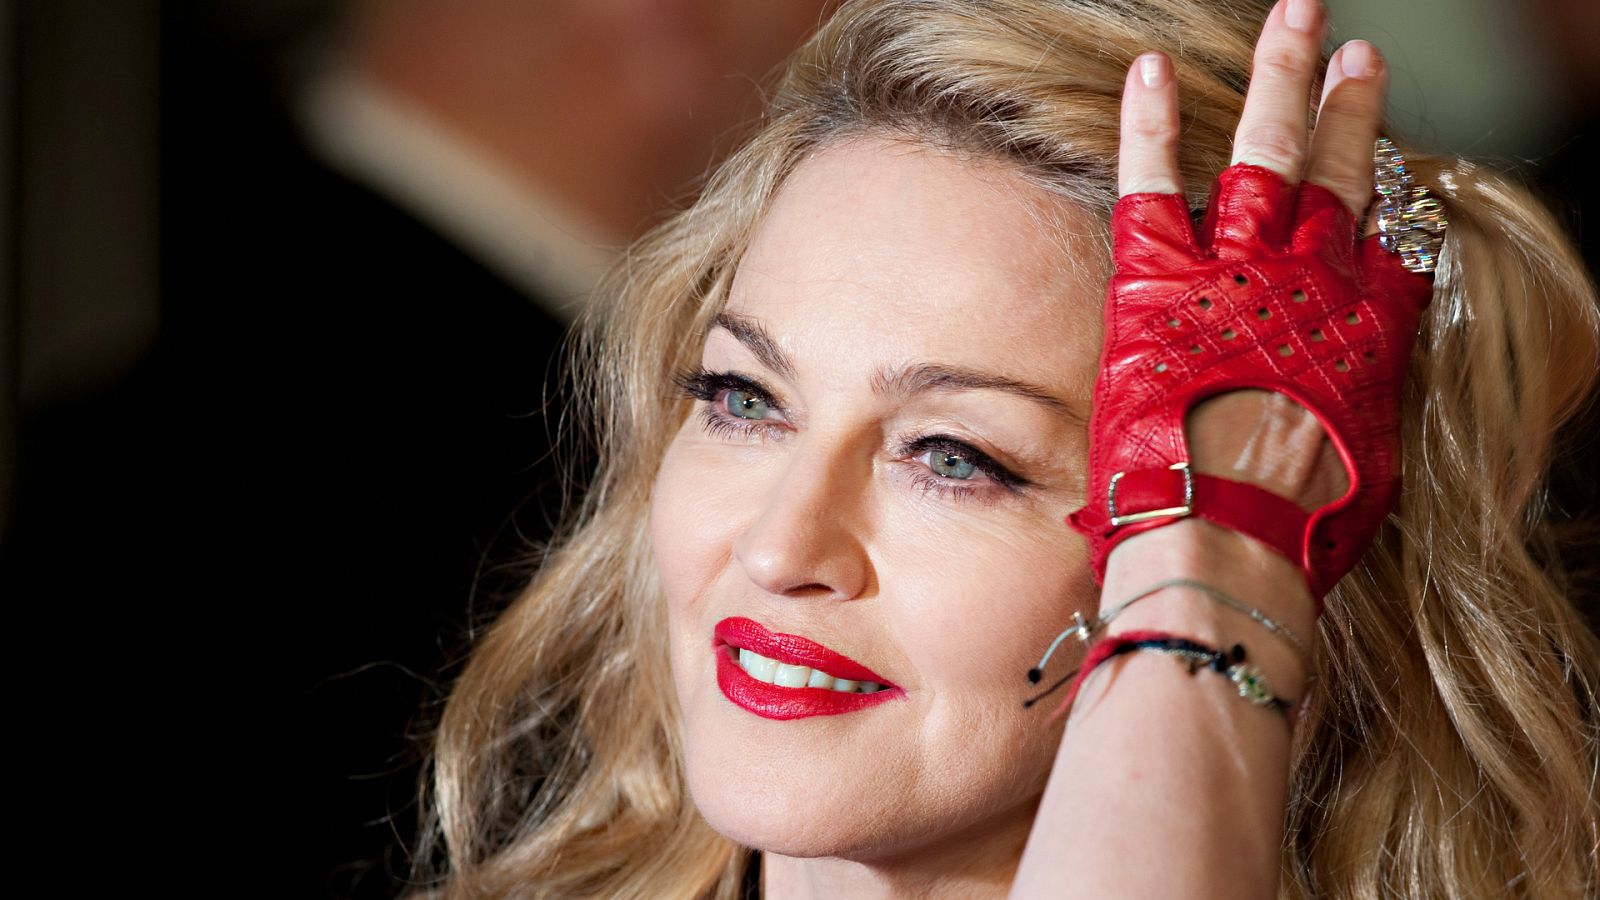 La verdadera historia de Madonna - Somos documentales - Documentales en RTVE